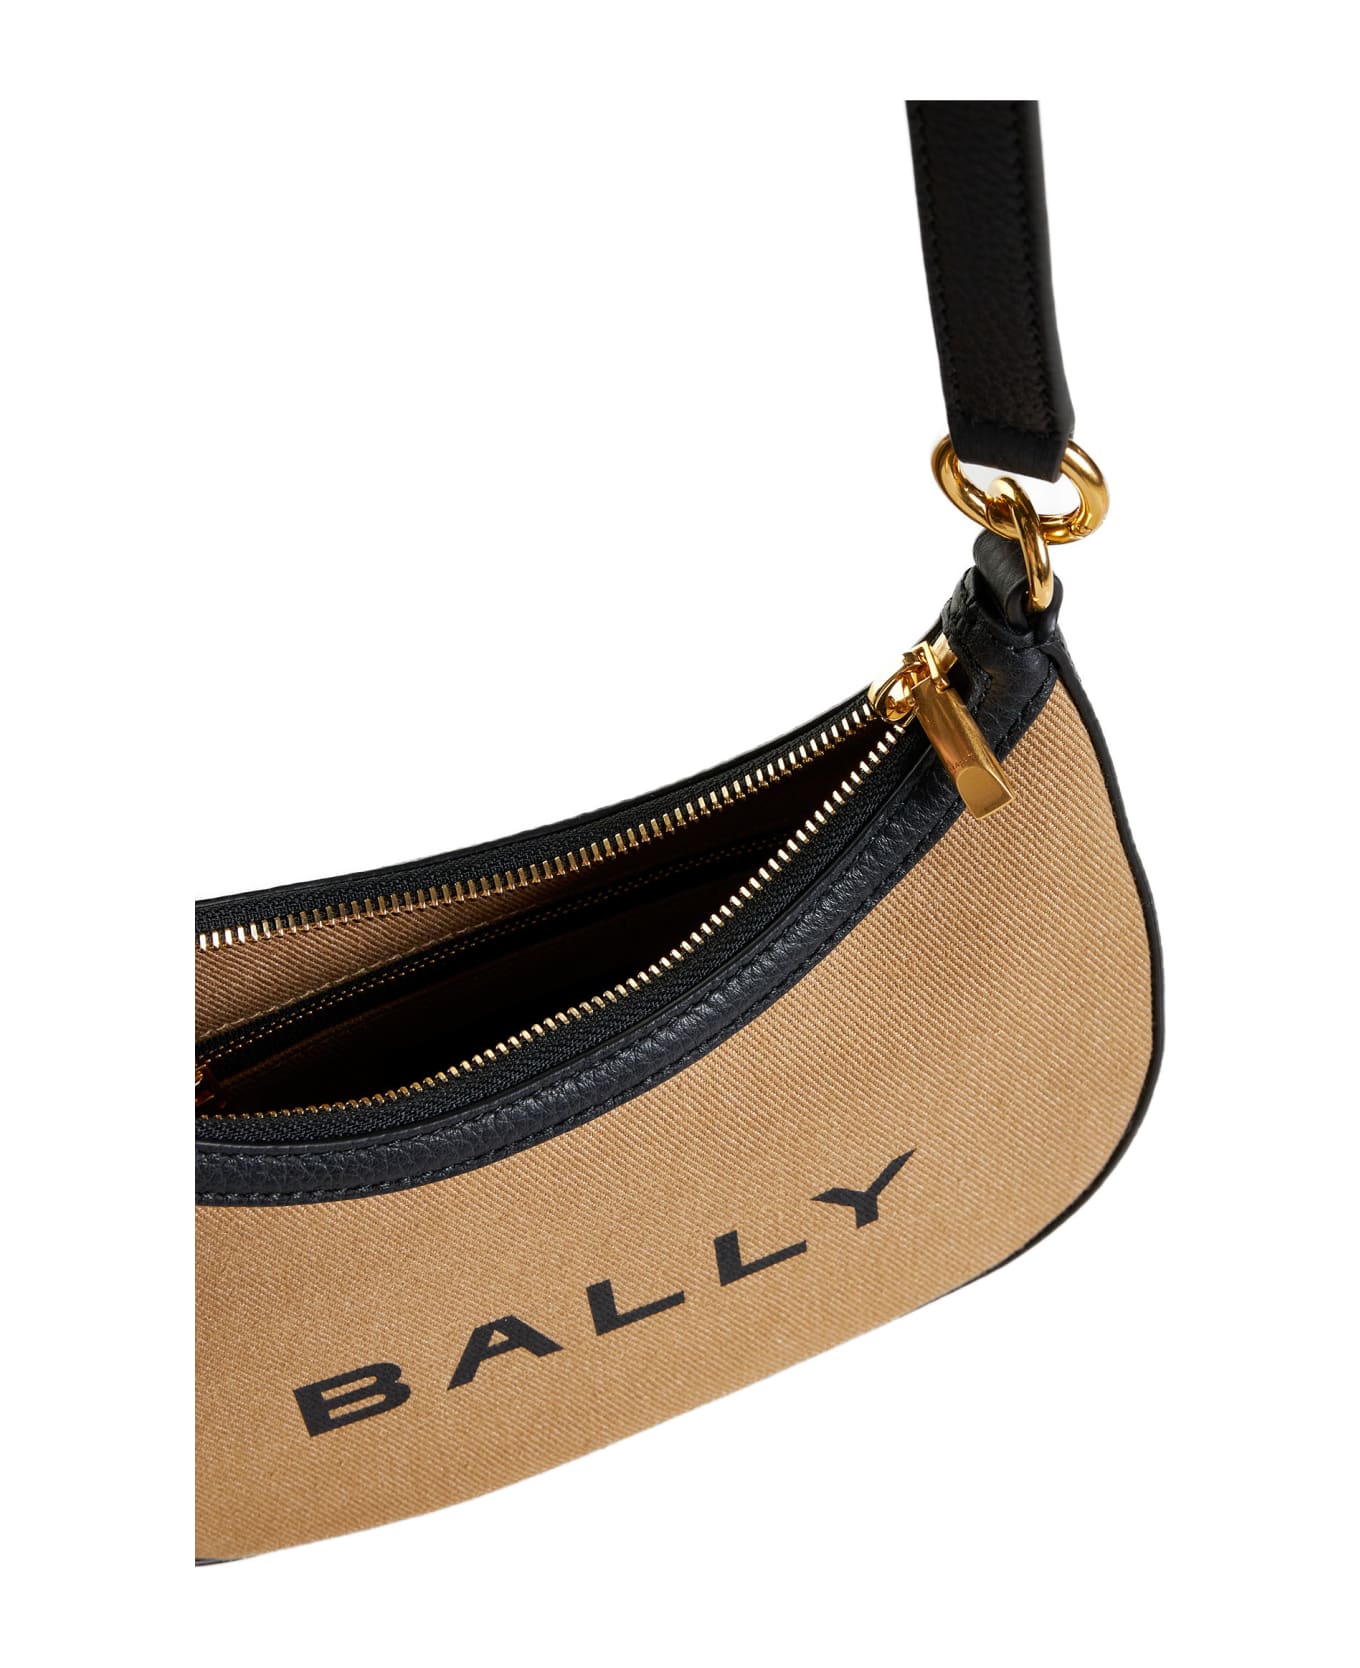 Bally Shoulder Bag - Sand/black+oro